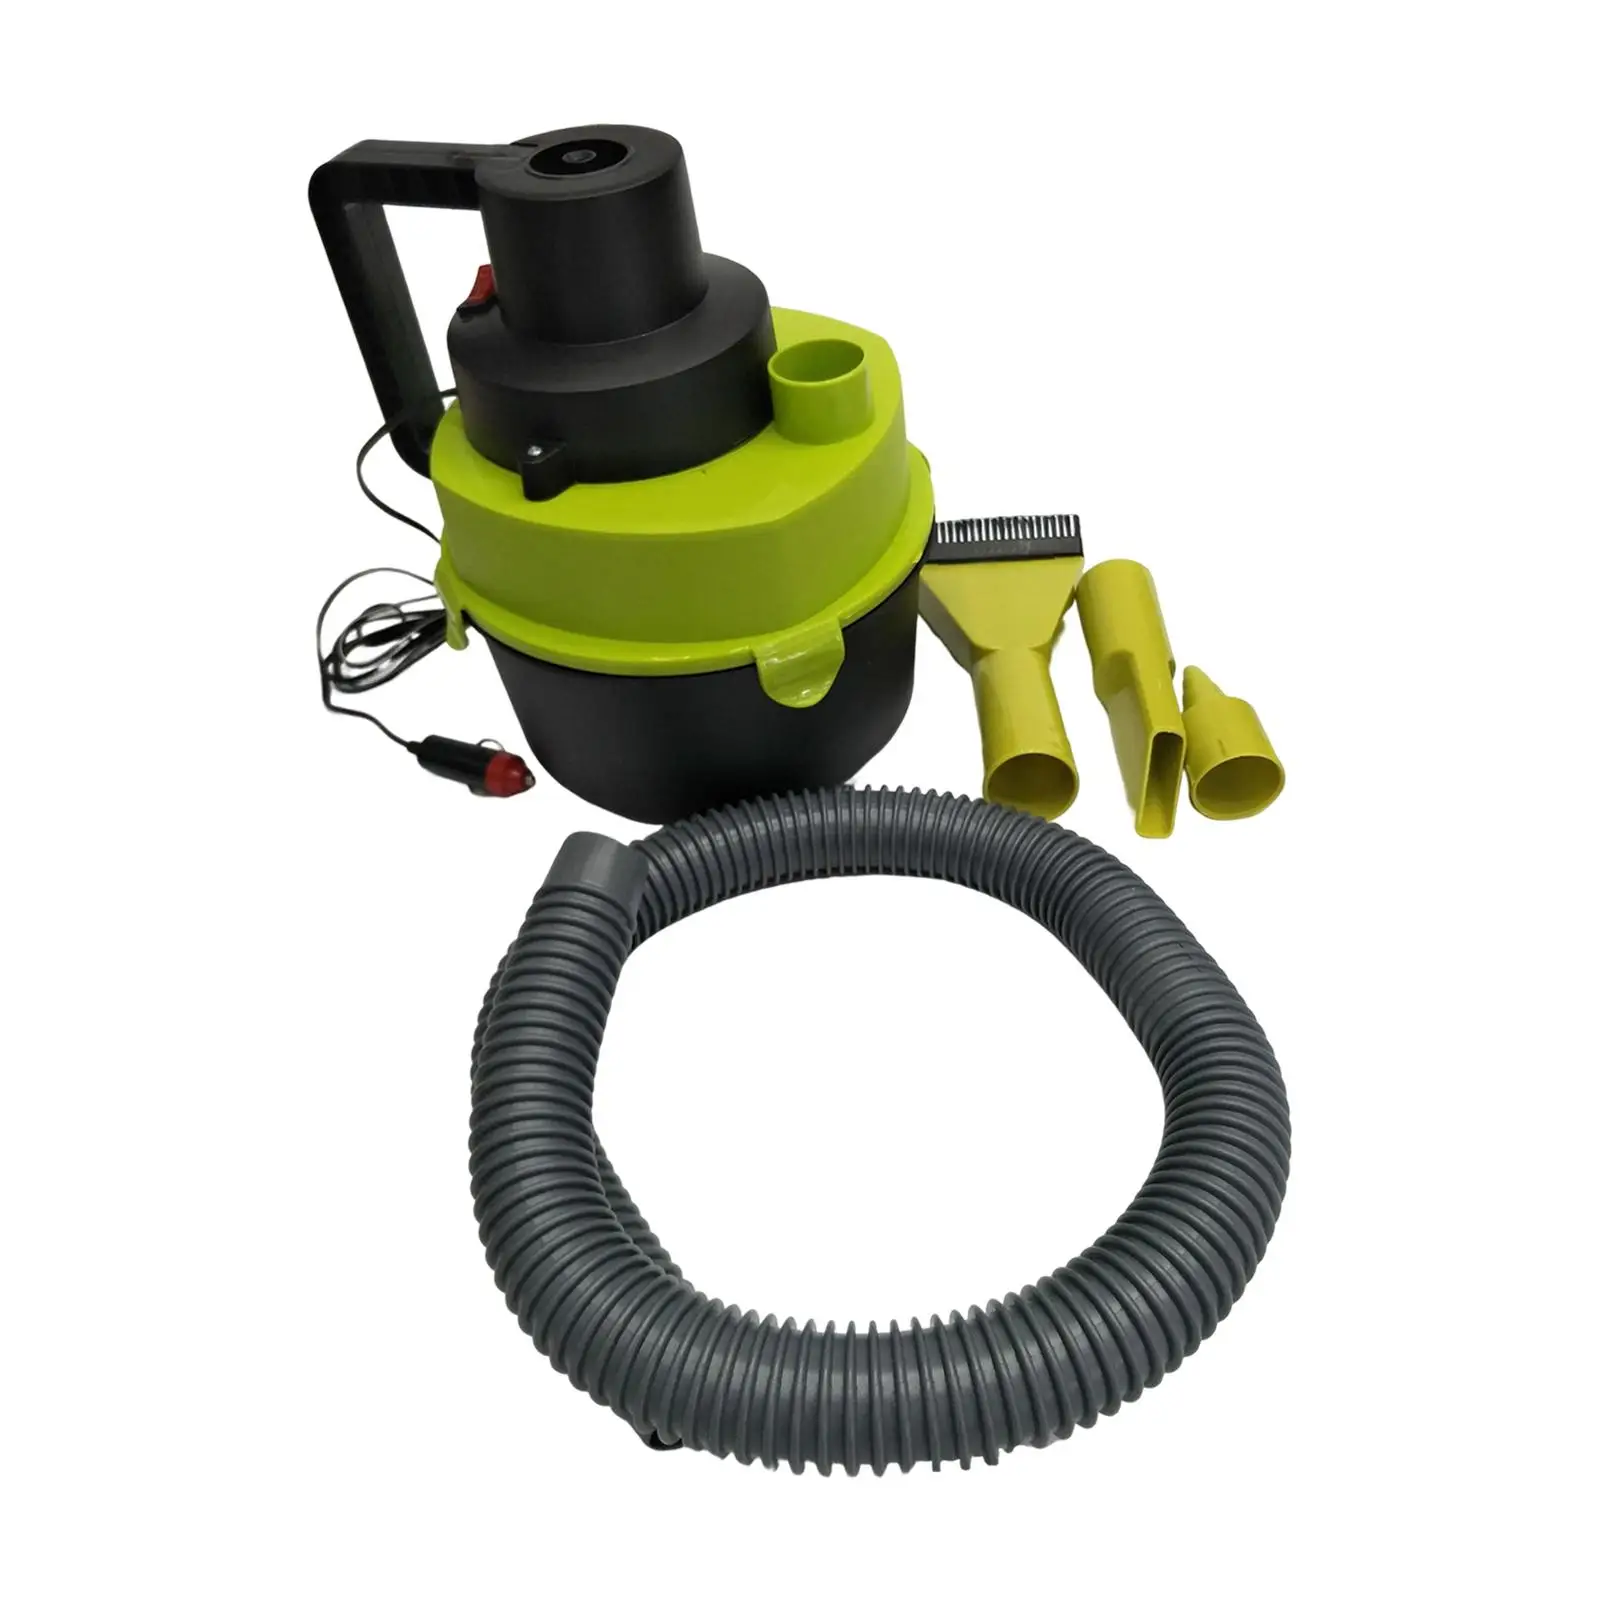 Portable Shop Vacuum with Attachments Debris Dual Use 4L Liquid dry wet Vacuum for Window Seams Basement Workshop Corners Carpet